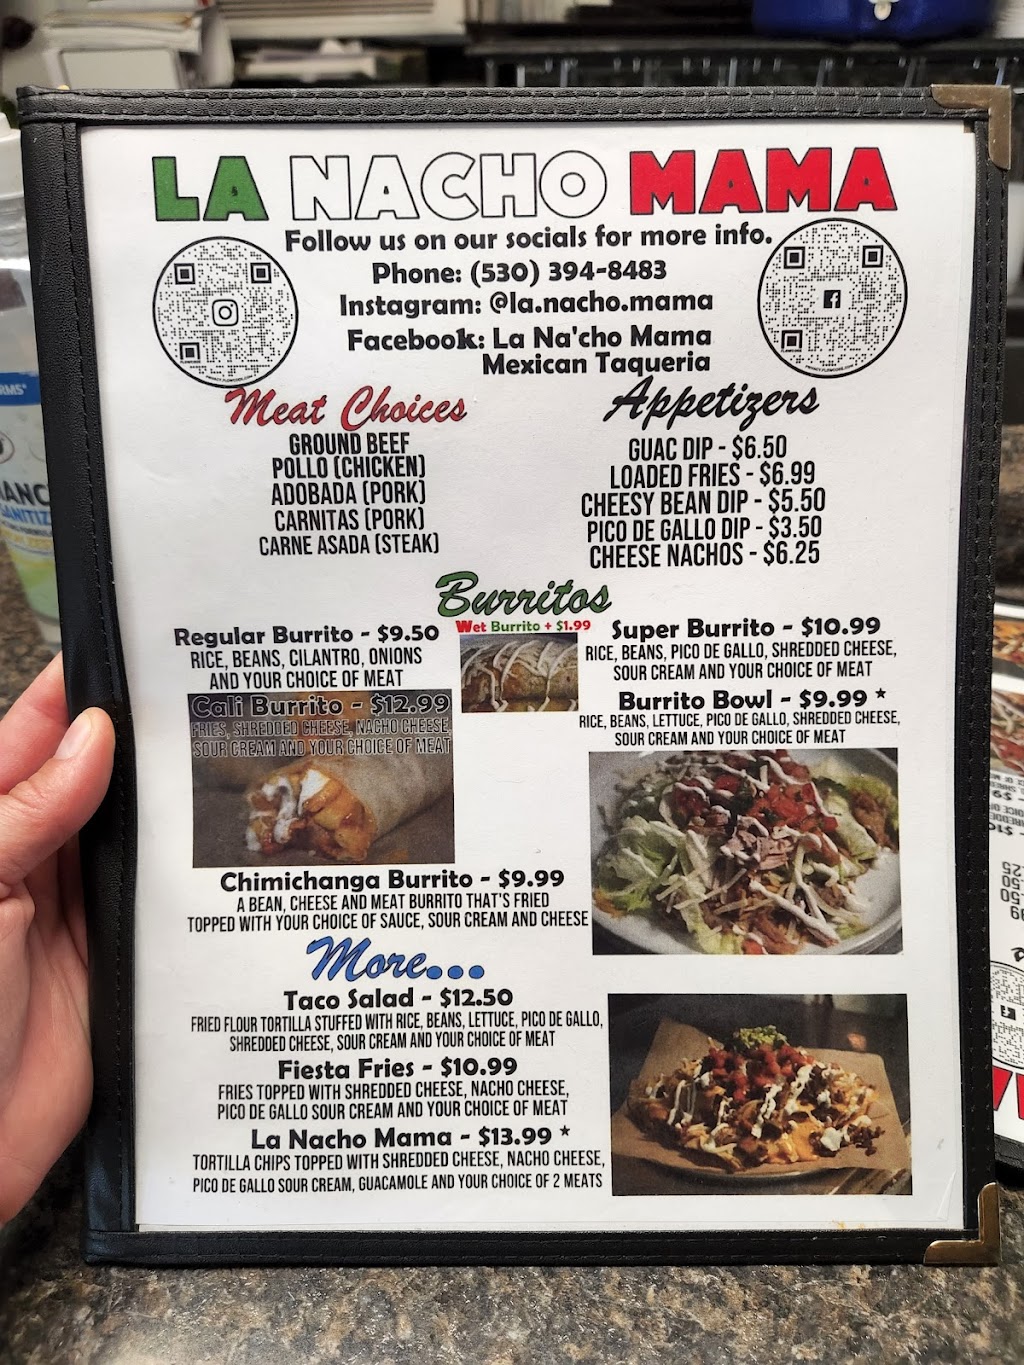 La Na’cho Mama Mexican Taqueria | restaurant | 2061 E Main St, Quincy, CA 95971, USA | 5303948483 OR +1 530-394-8483